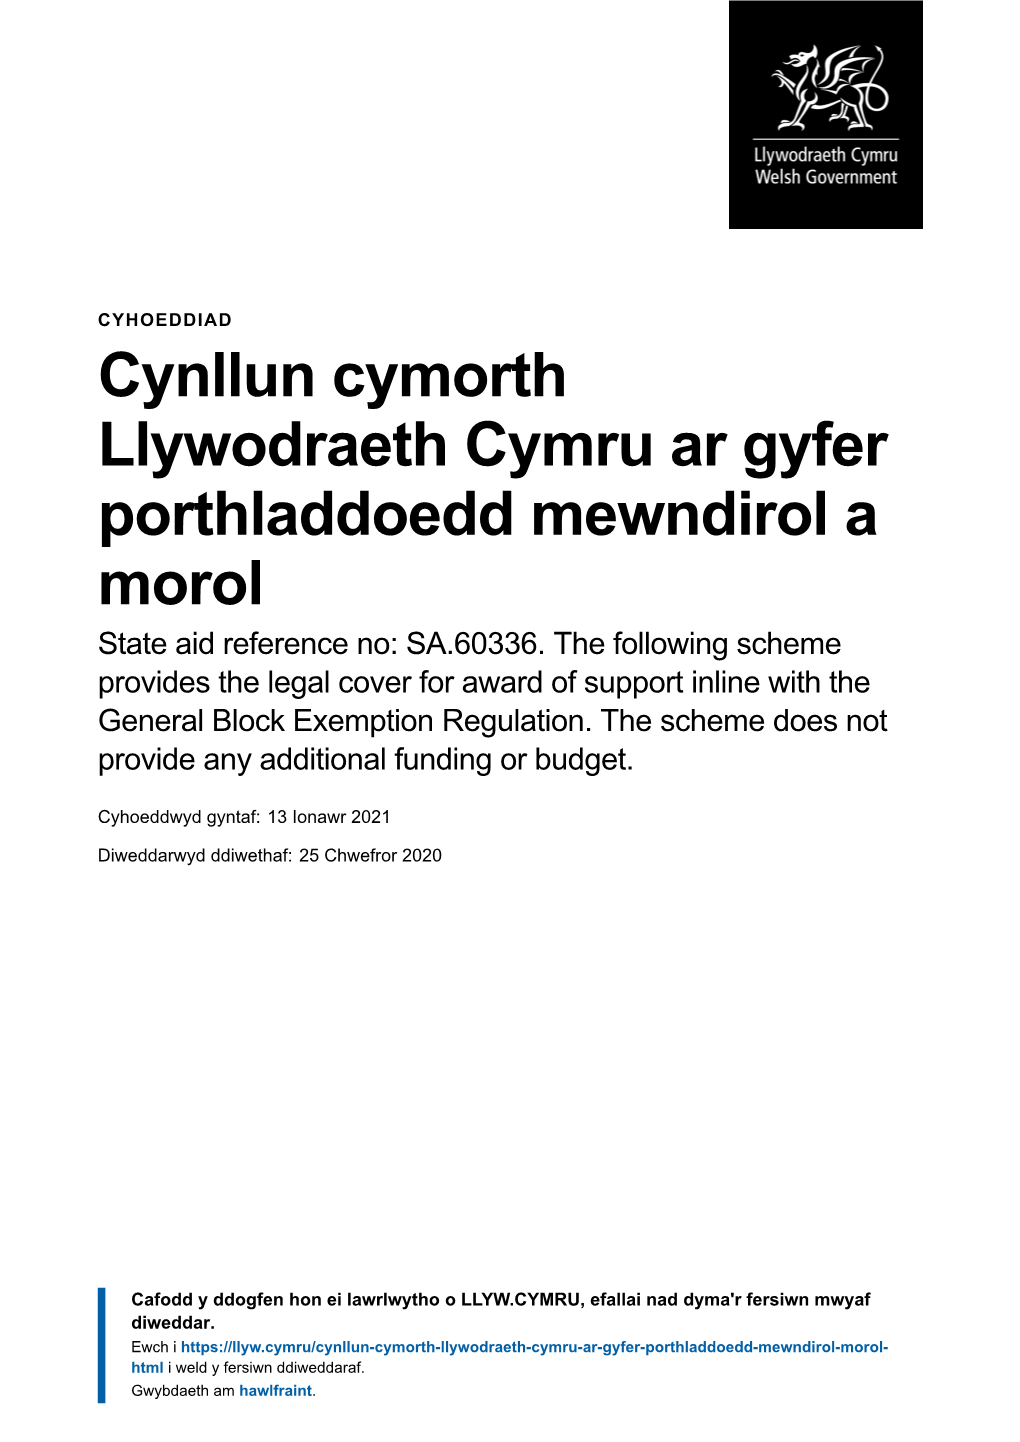 Cynllun Cymorth Llywodraeth Cymru Ar Gyfer Porthladdoedd Mewndirol a Morol State Aid Reference No: SA.60336